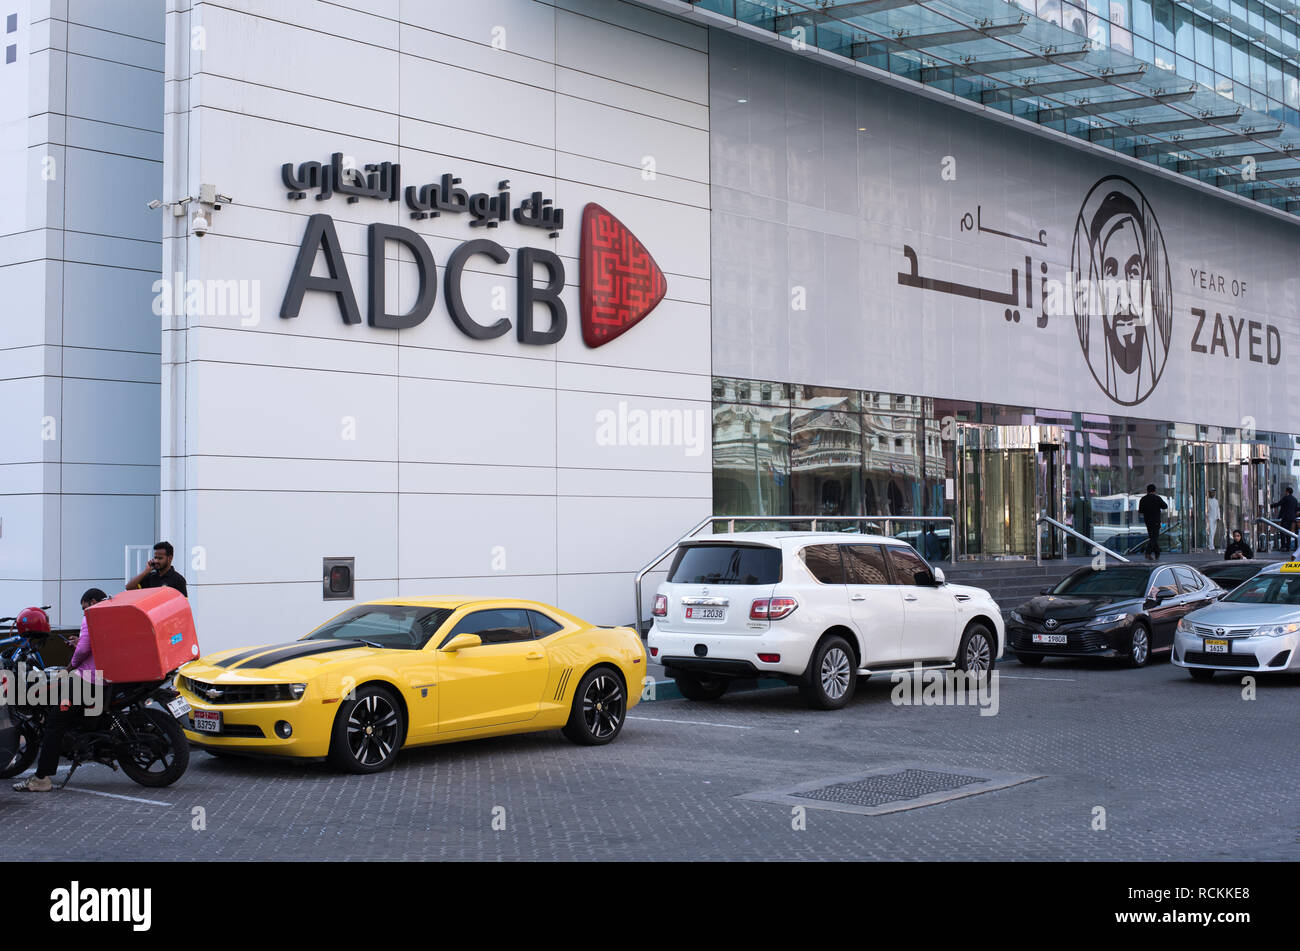 Vista exterior de Abu Dhabi Commercial Bank (ADCB) Foto de stock